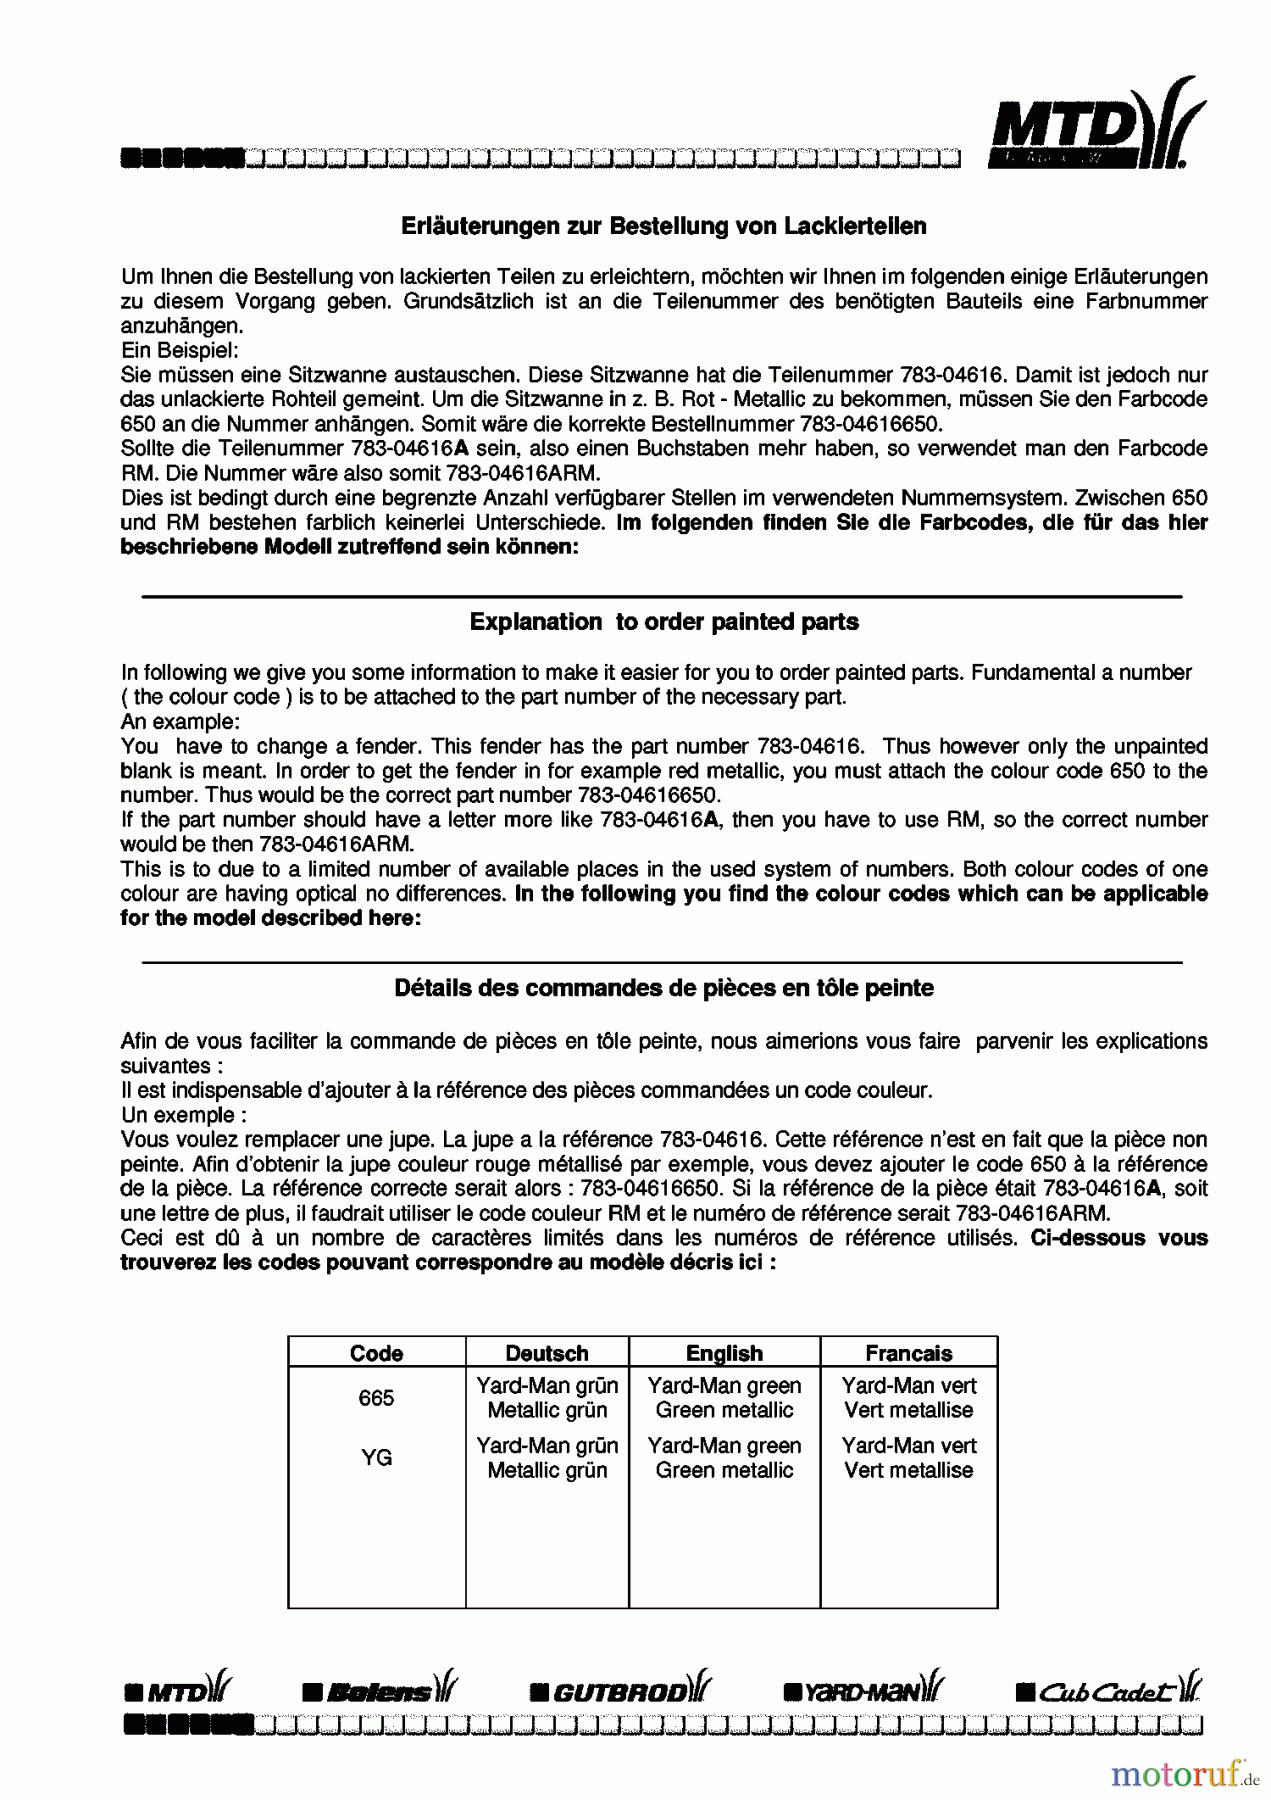  Raiffeisen Tracteurs de jardin RMS 18-117 145U844H628  (1995) Information du code de couleur